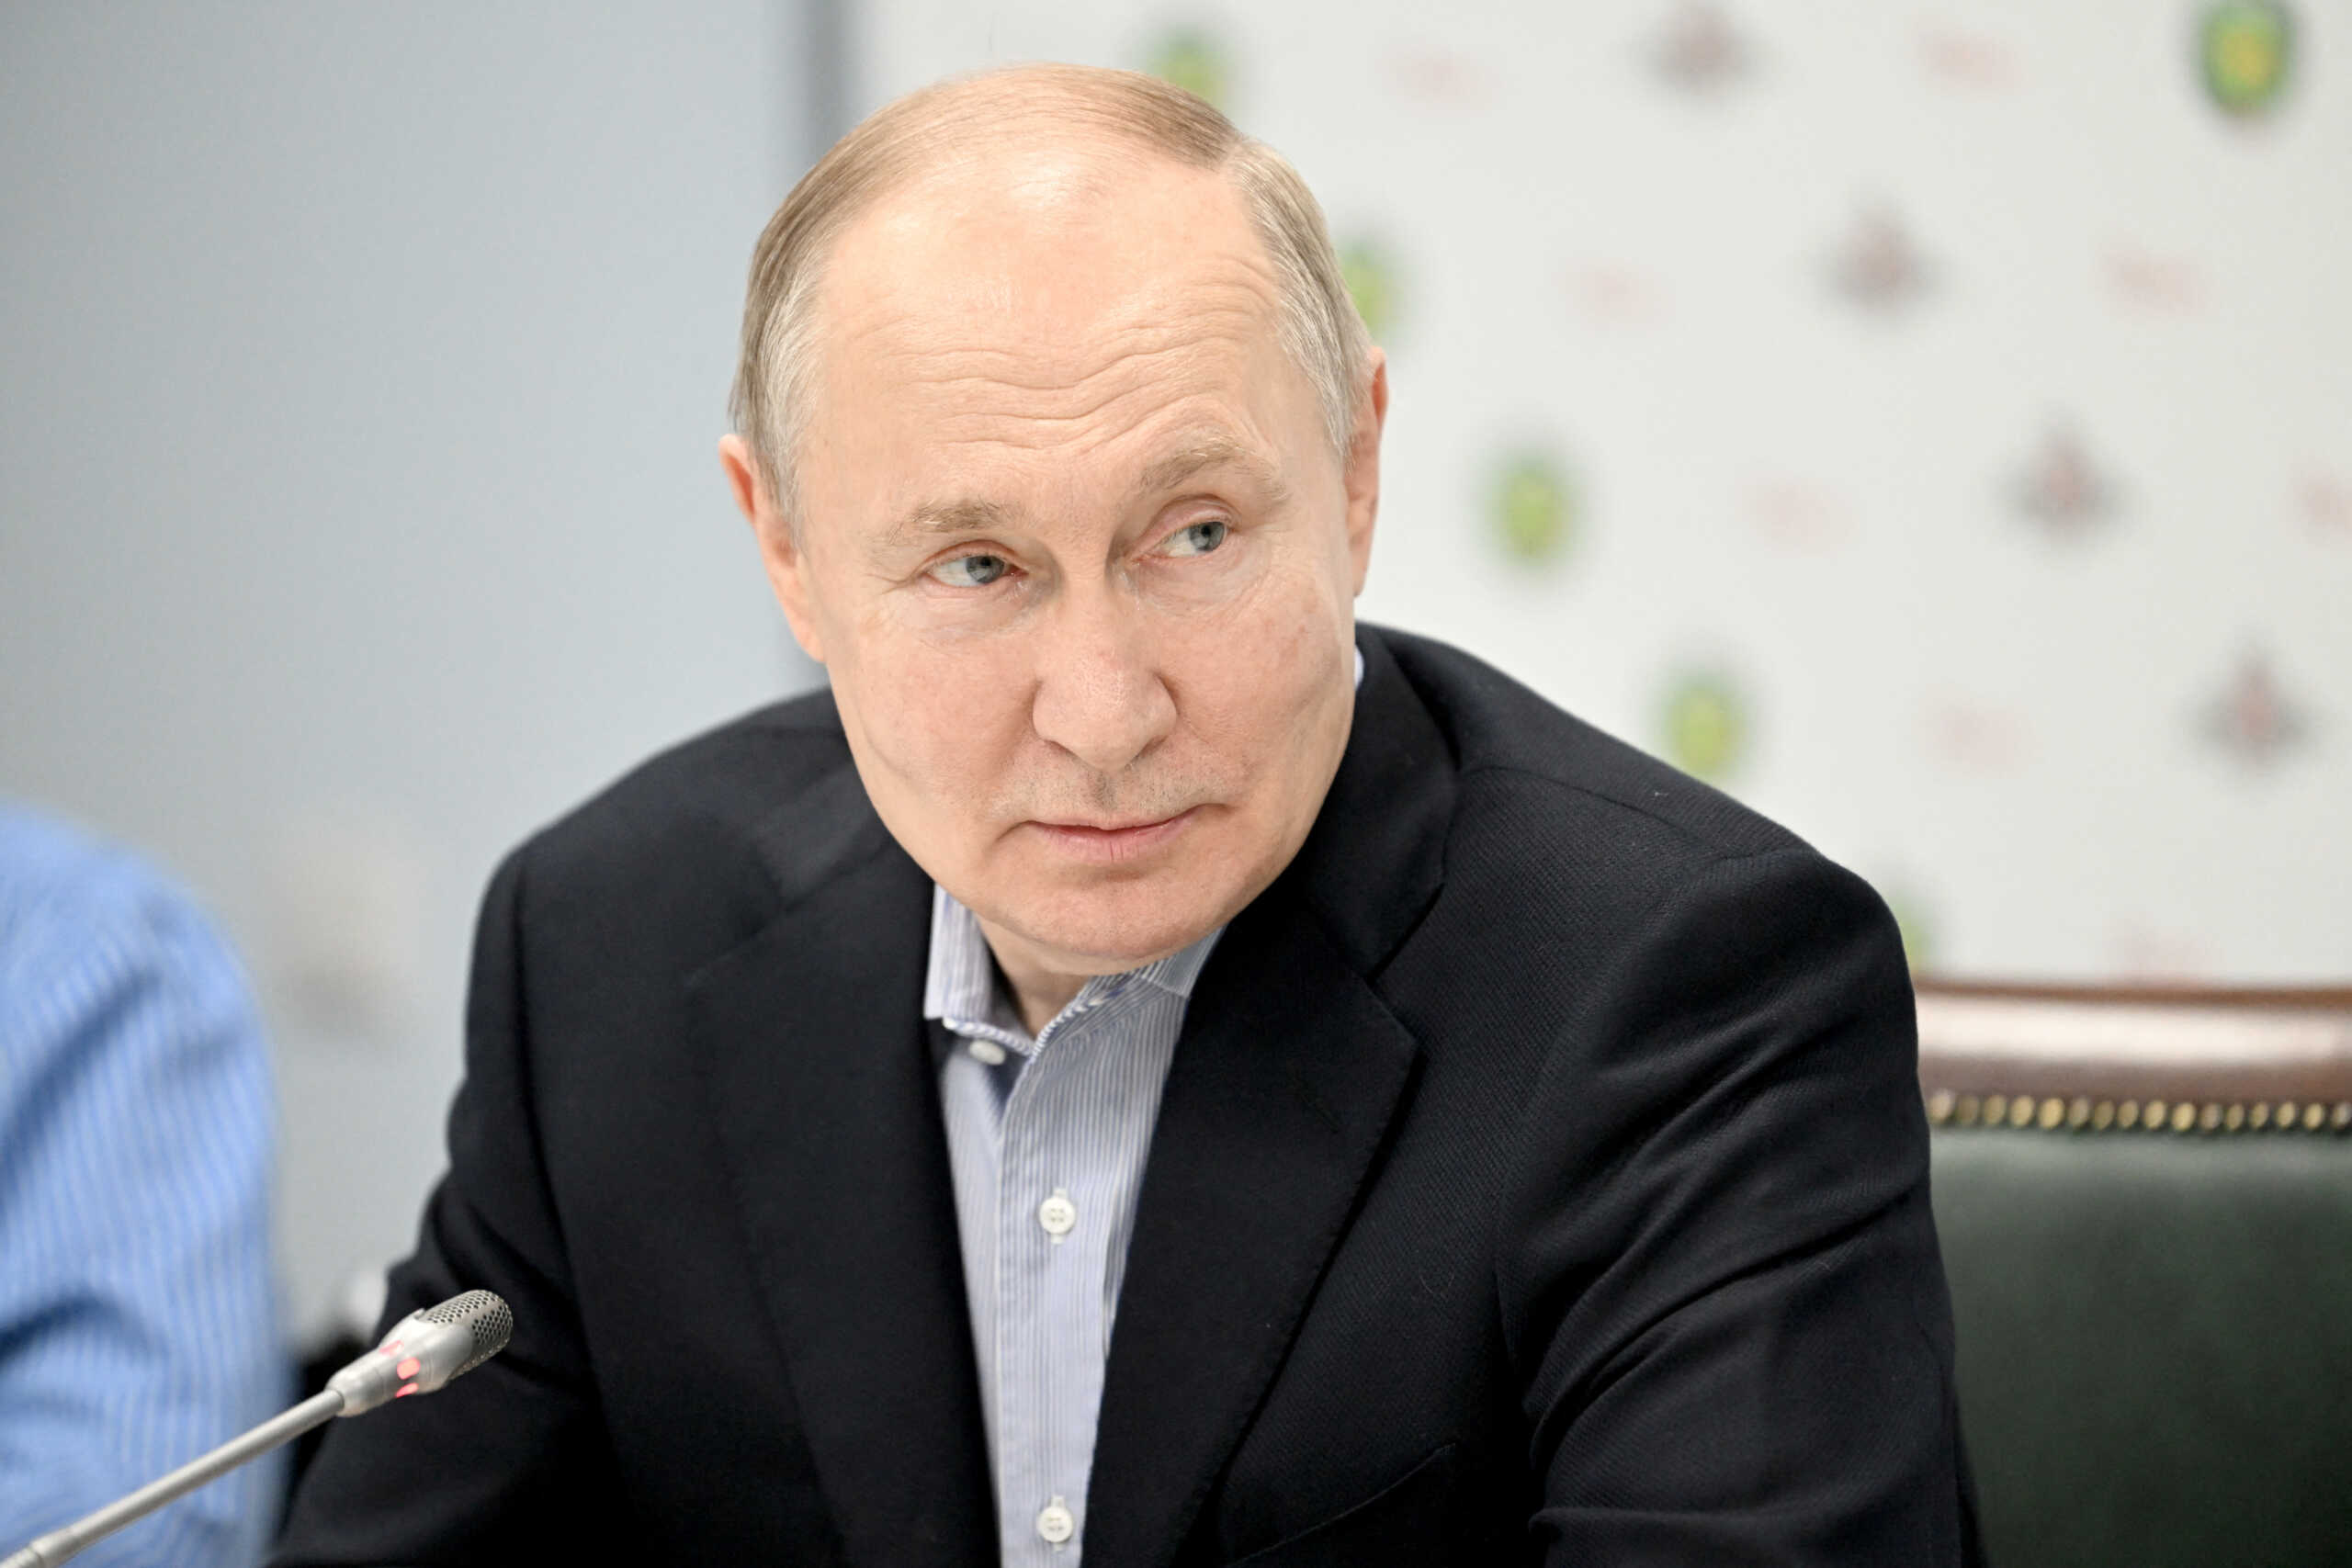 Πούτιν: Η Ρωσία θα εντείνει τους βομβαρδισμούς στην Ουκρανία μετά την επίθεση στο Μπέλγκοροντ